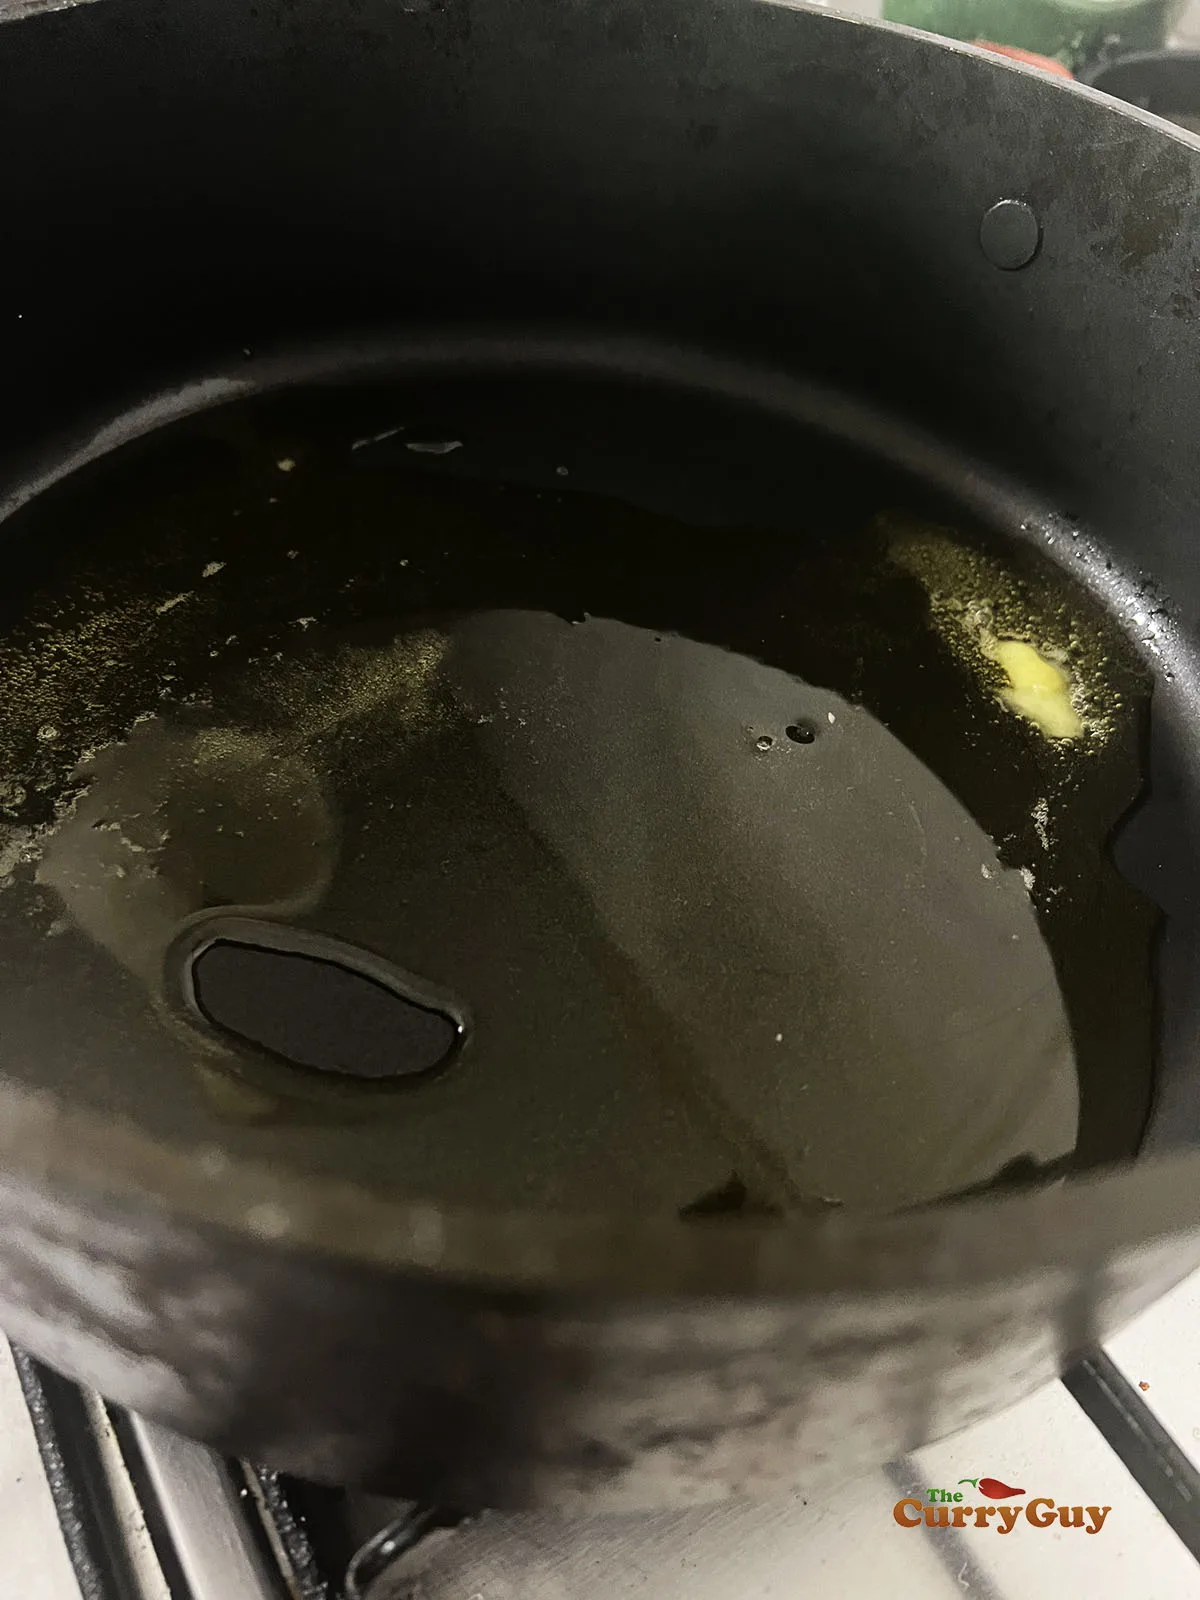 Melting ghee in a pan